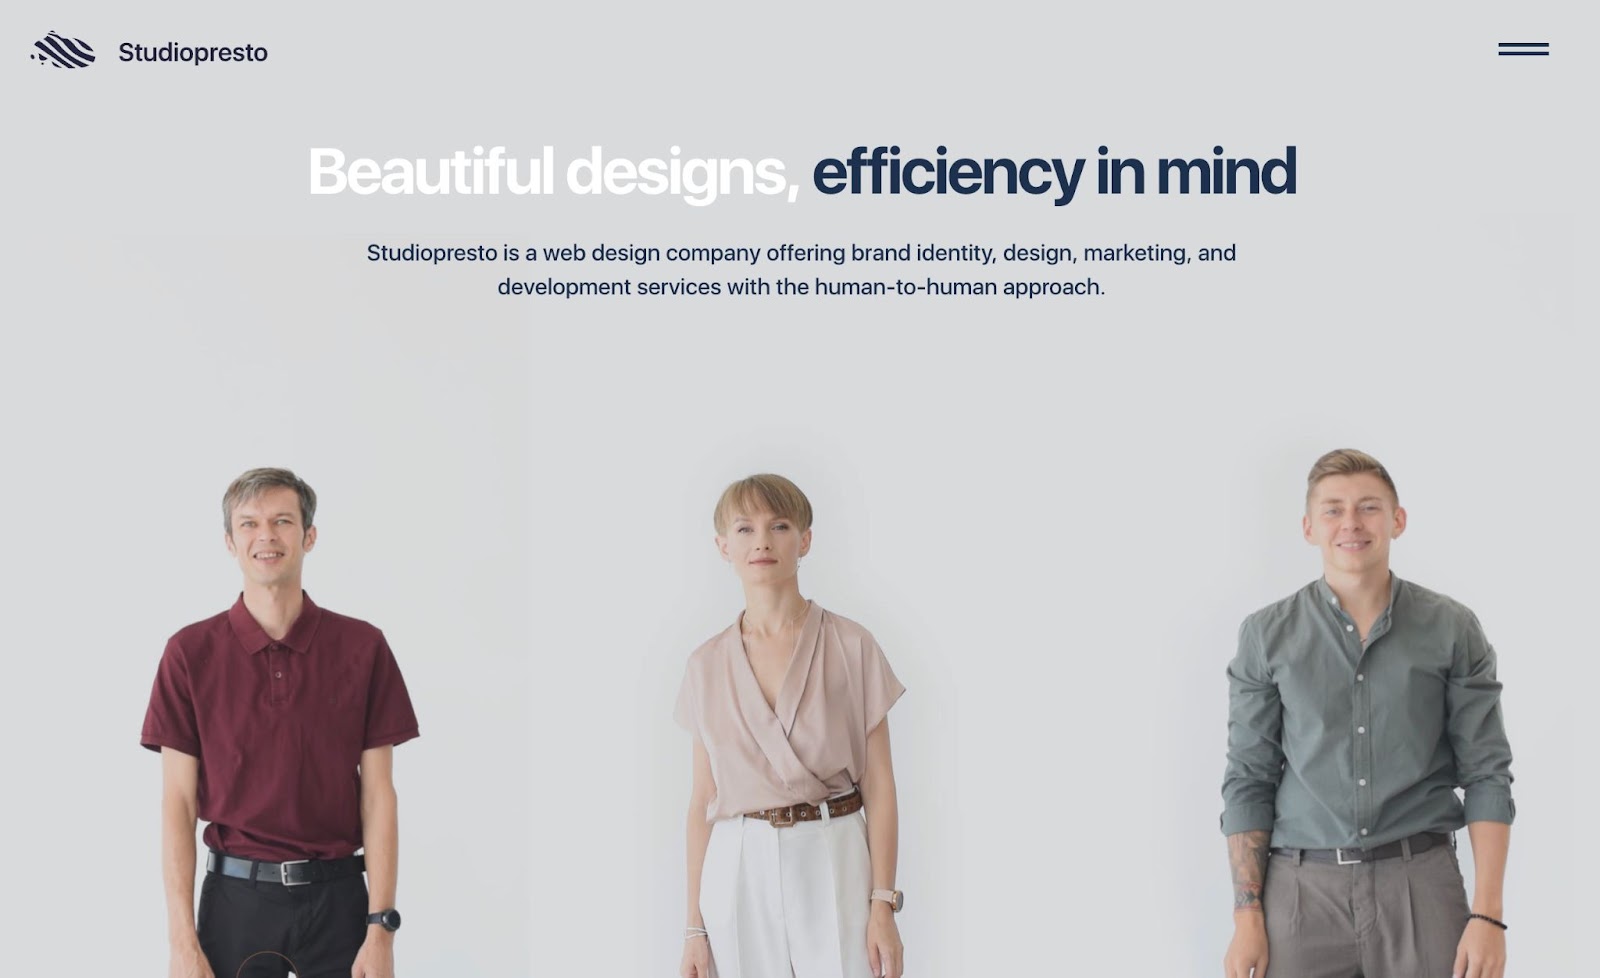 Latar belakang abu-abu dengan teks header yang bertuliskan "Desain cantik, mempertimbangkan efisiensi". Di bawahnya ada gambar pria berbaju merah, wanita berbaju merah, dan pria berkancing bijak.